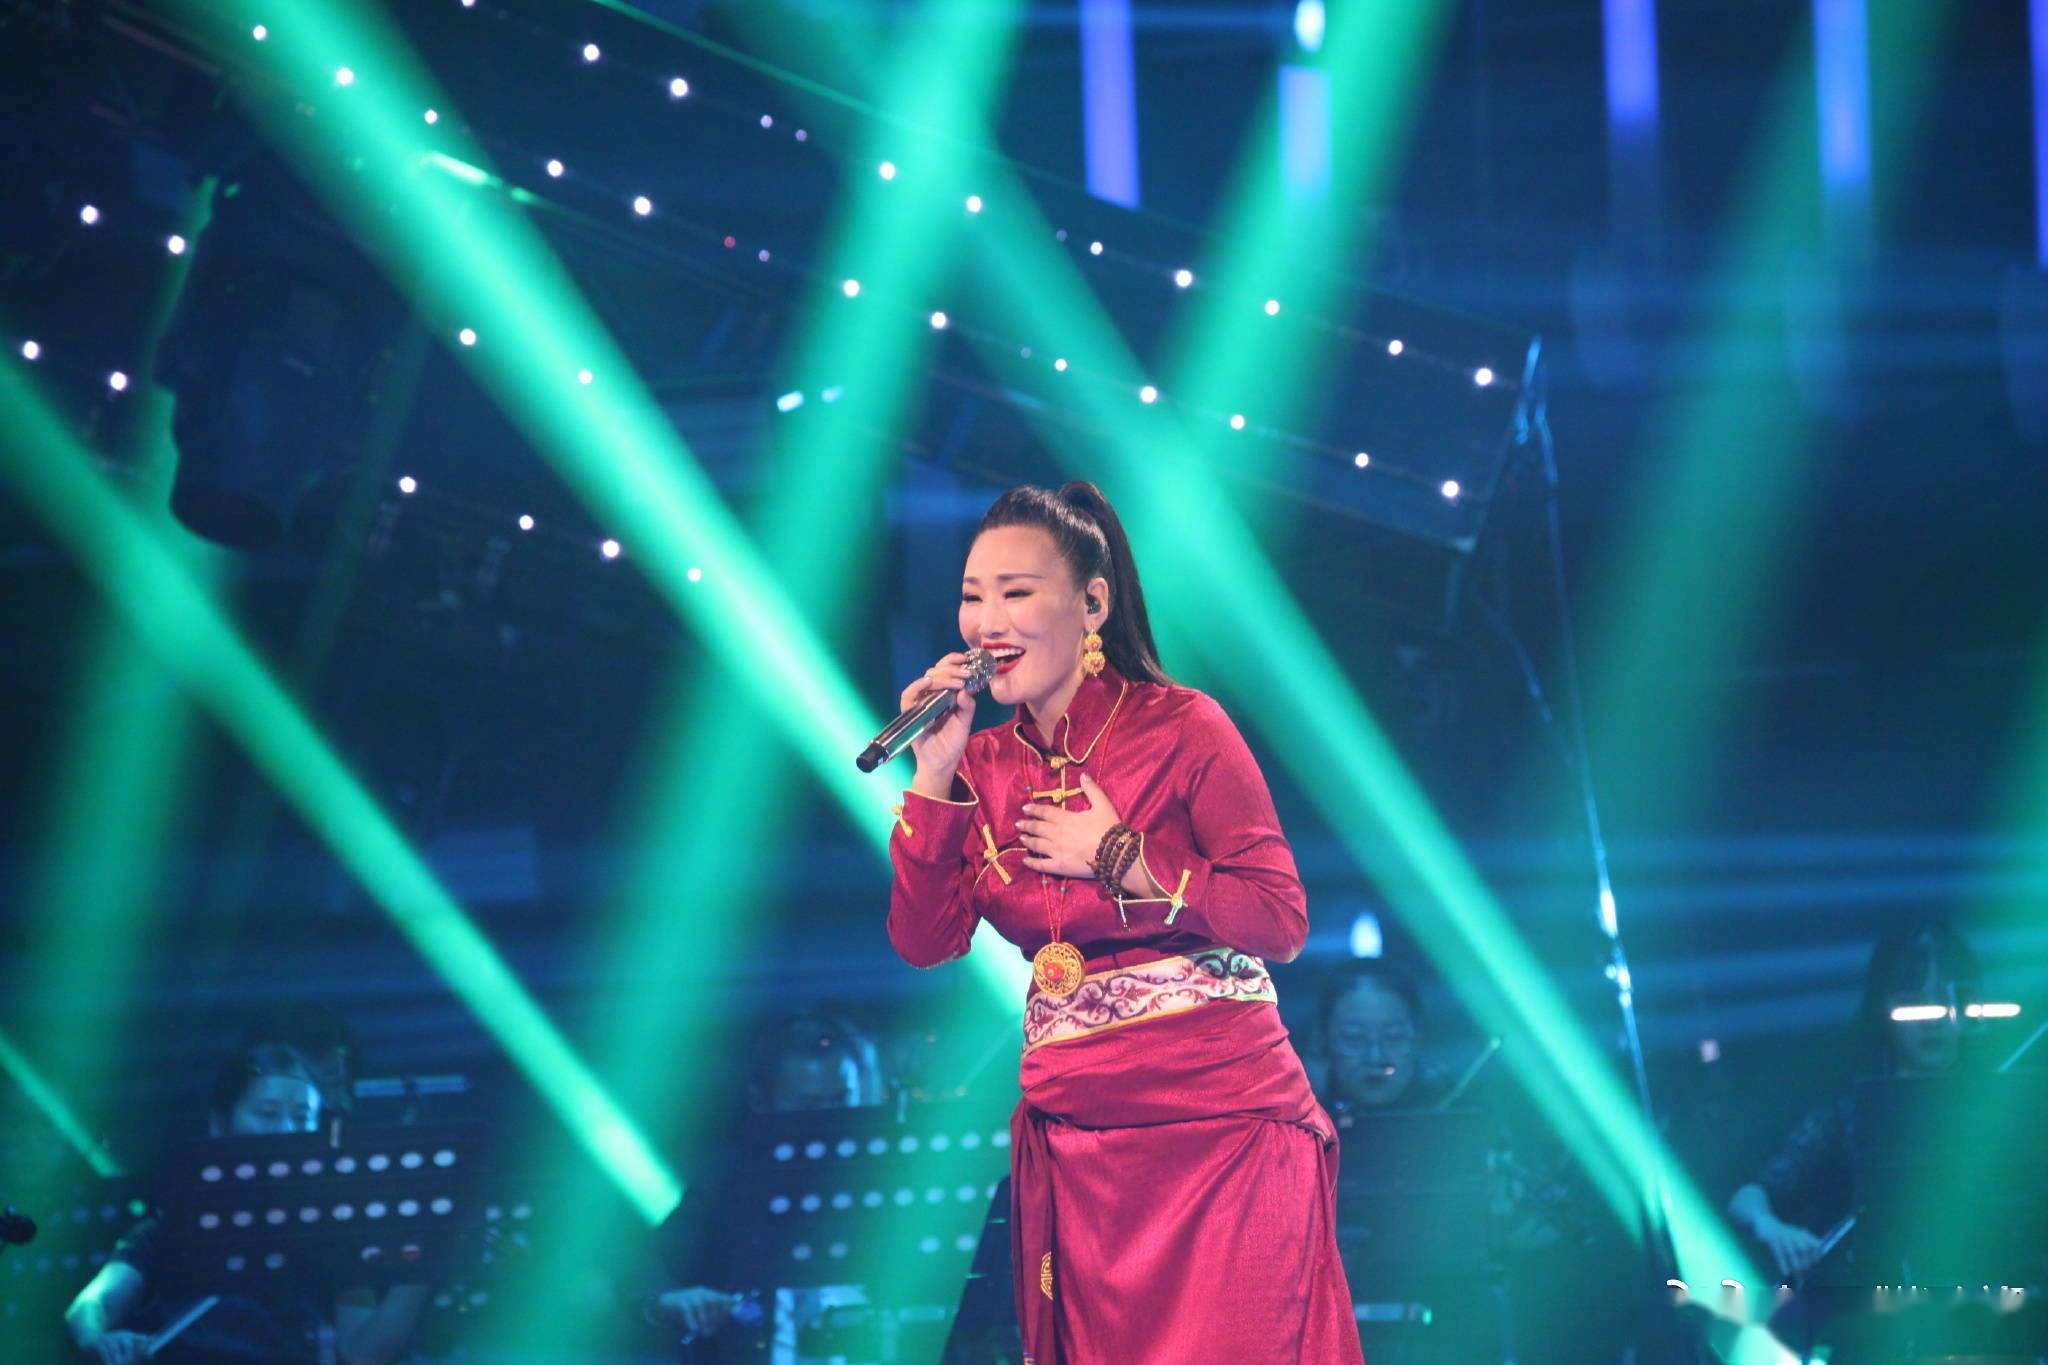 【中国藏歌会微直播】藏族歌手德格叶带来传统藏歌《拉孜堆谐》,全新